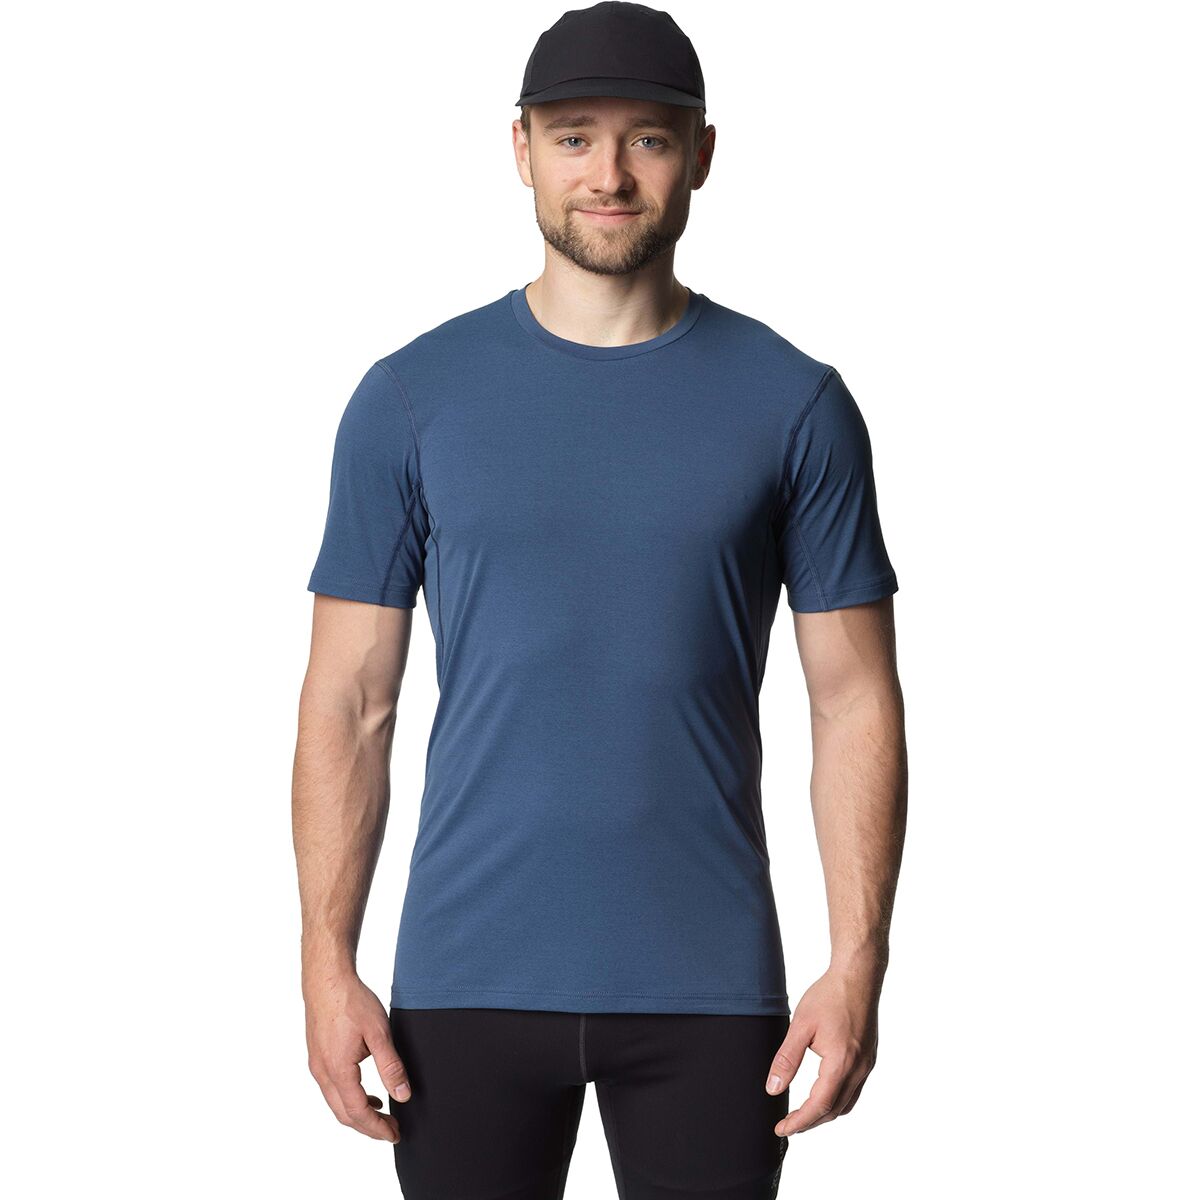 Pace Air T-Shirt - Men